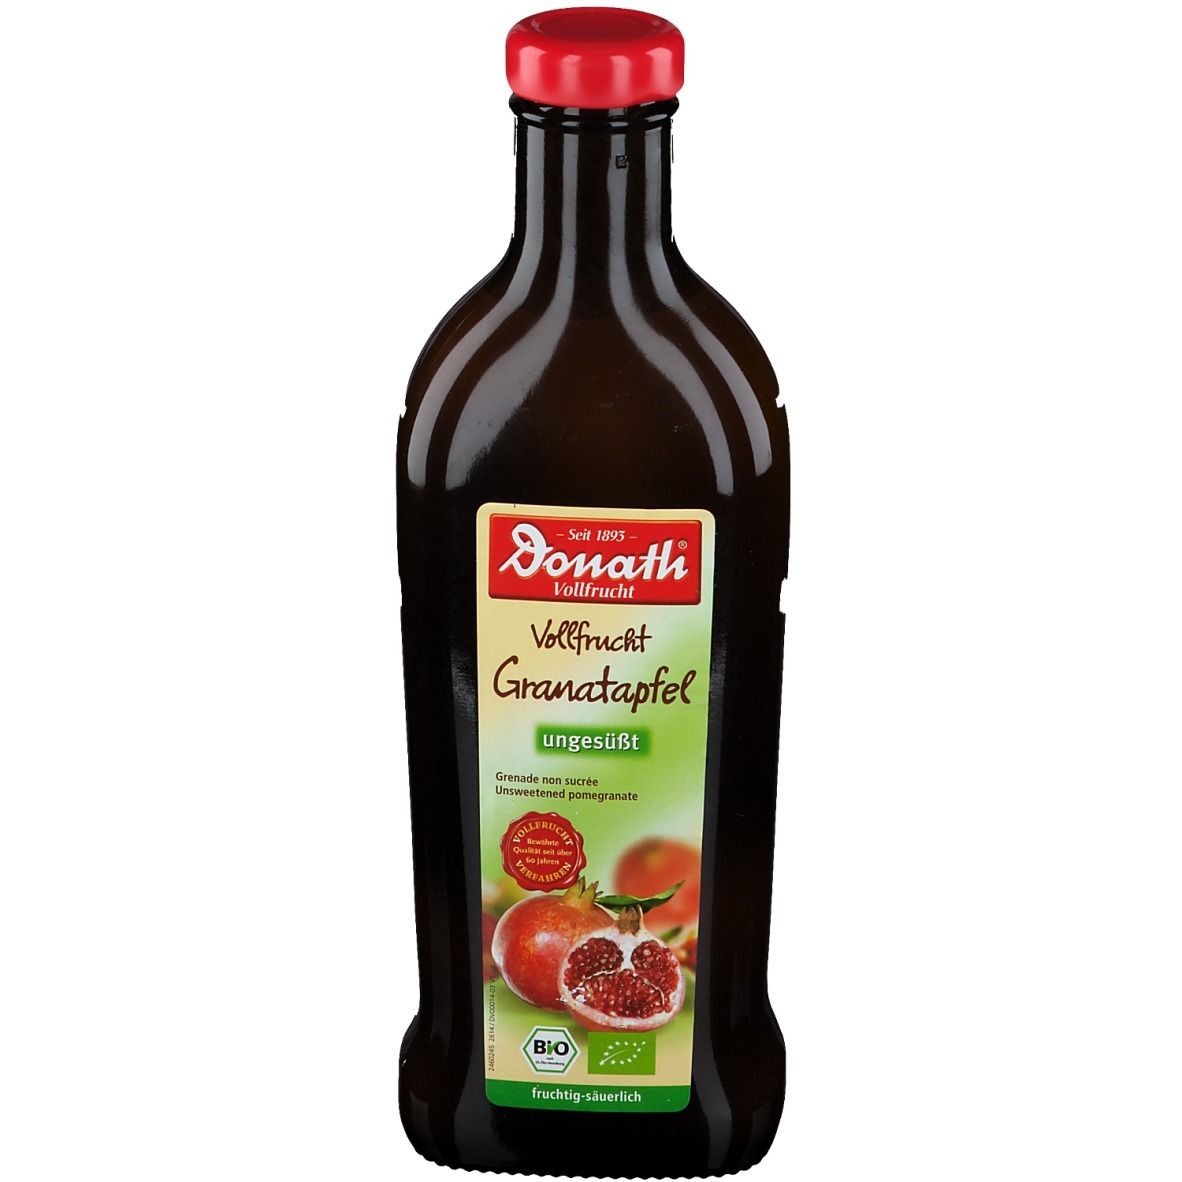 Donath® Vollfrucht Granatapfel - ungesüßt BIO